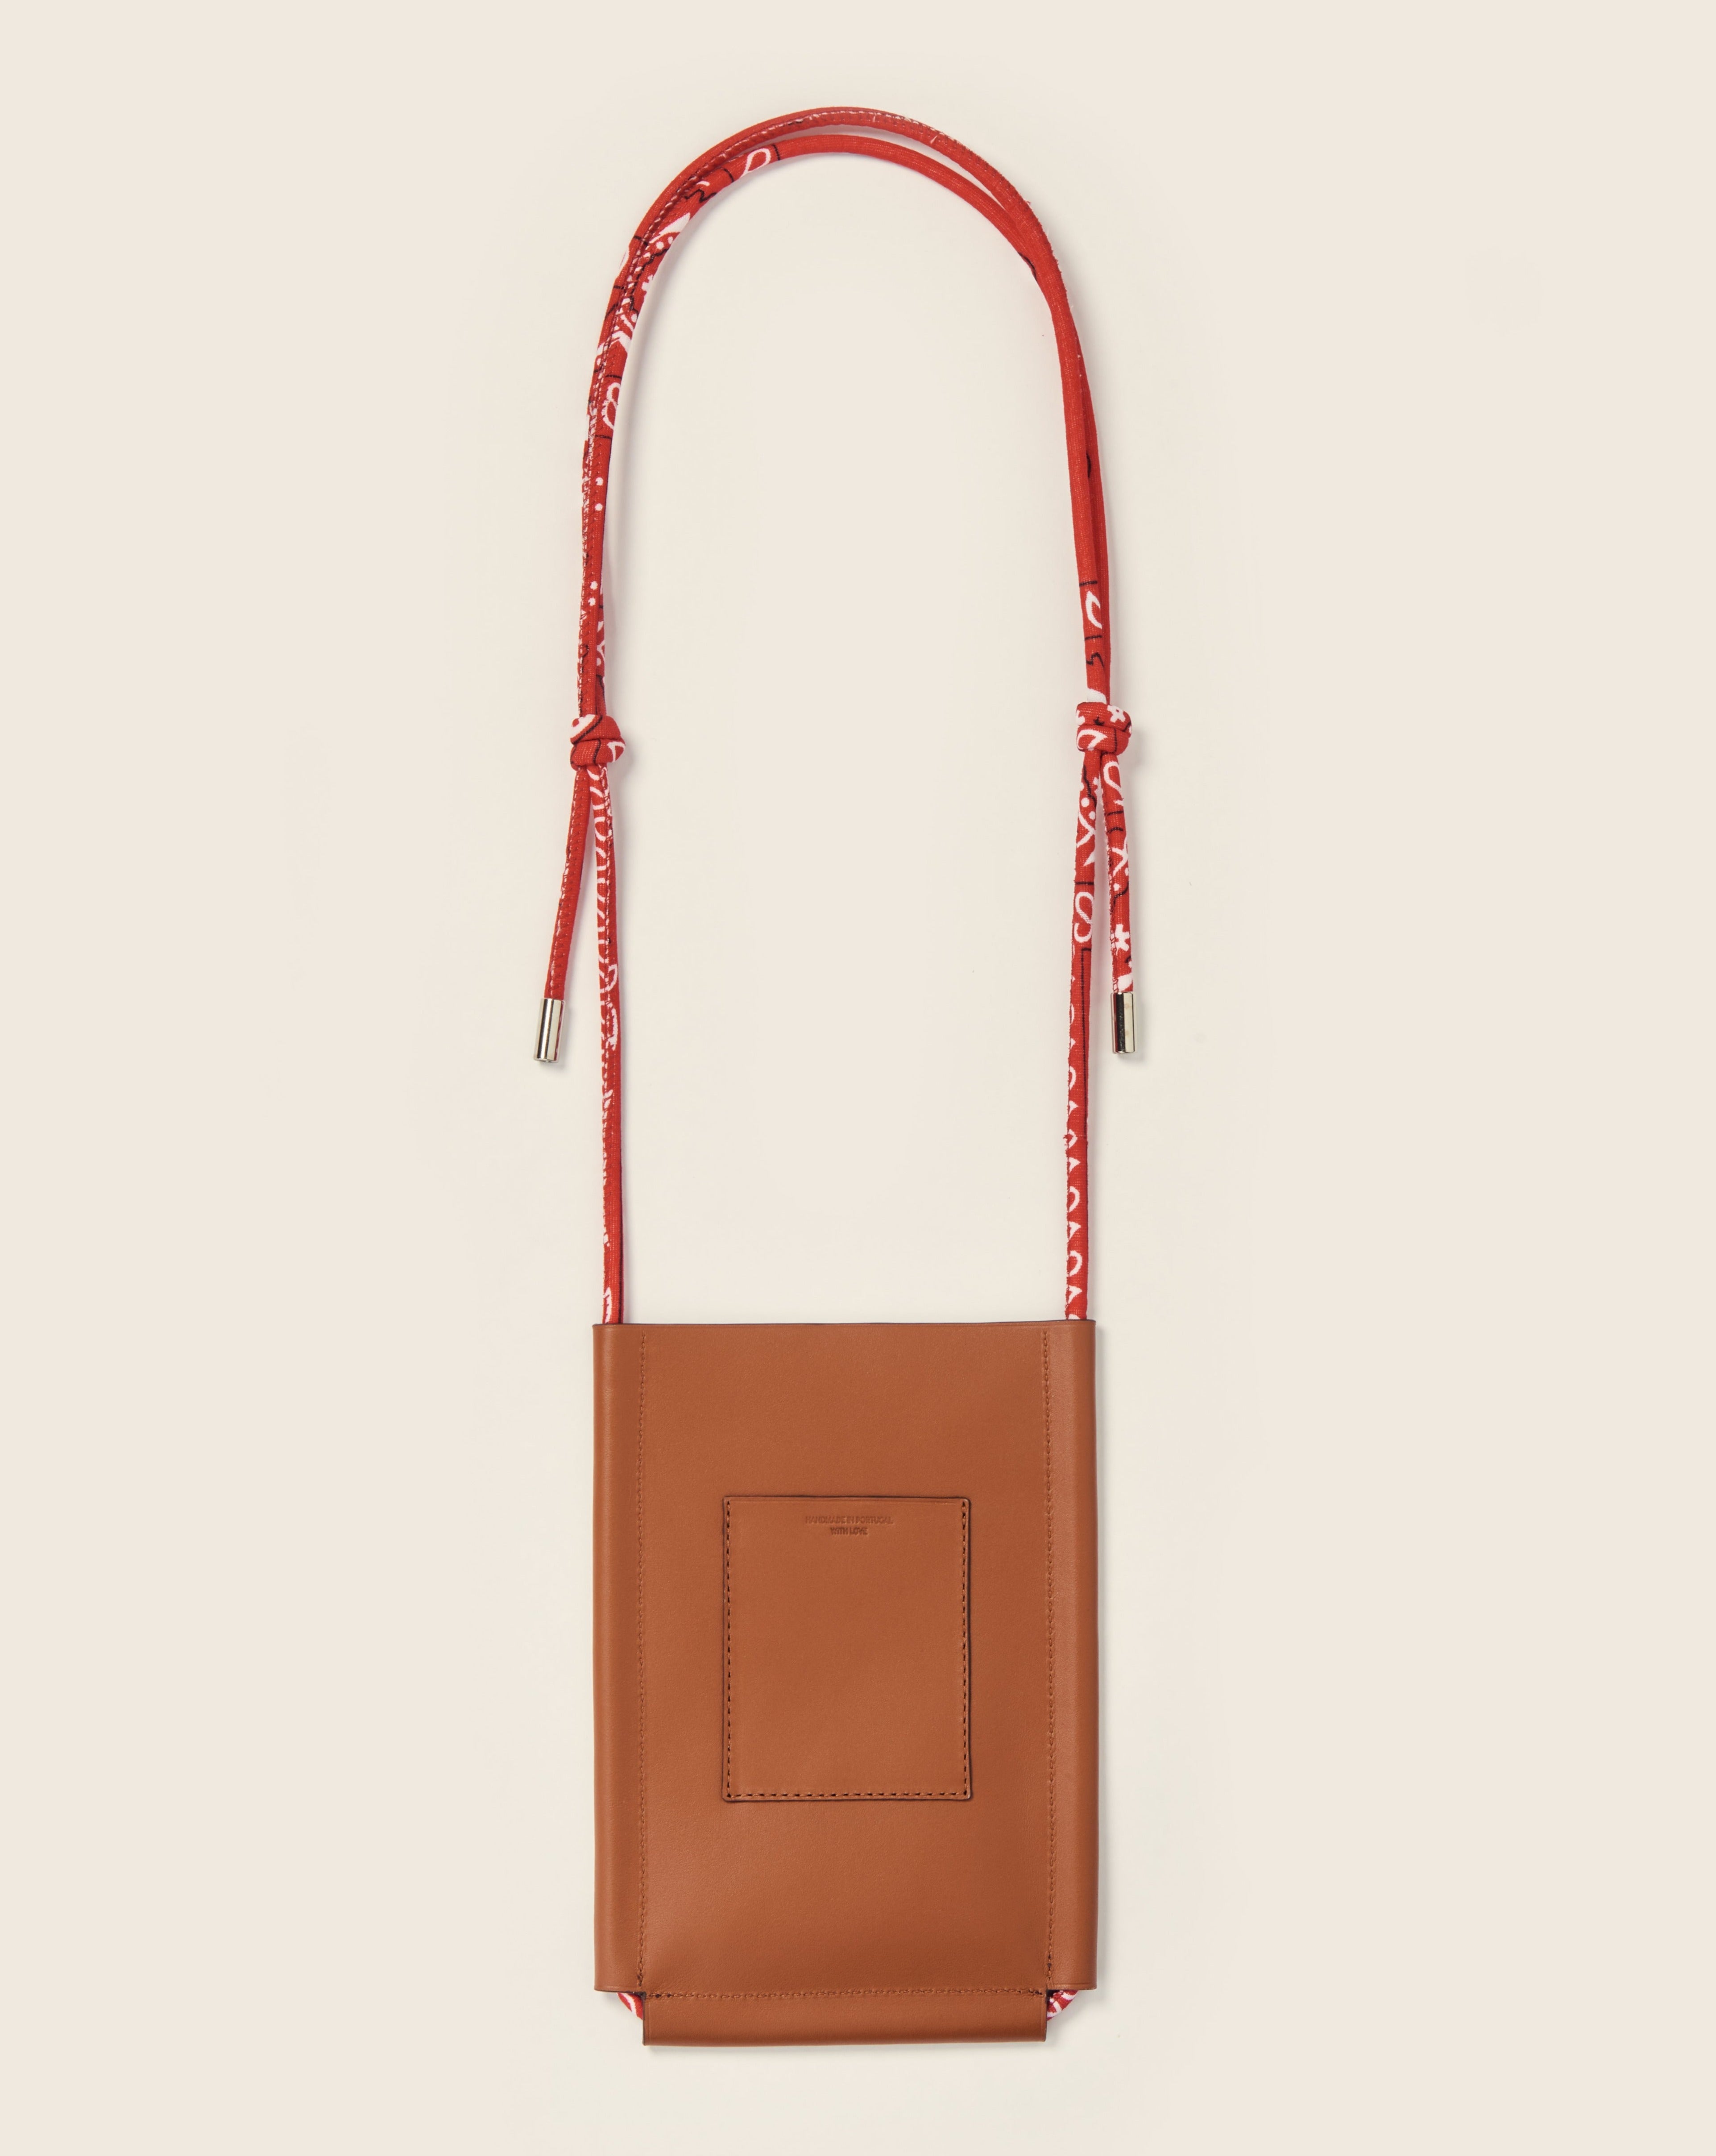 DENALI - Leather phone sleeve - Gold leather & Bandana red